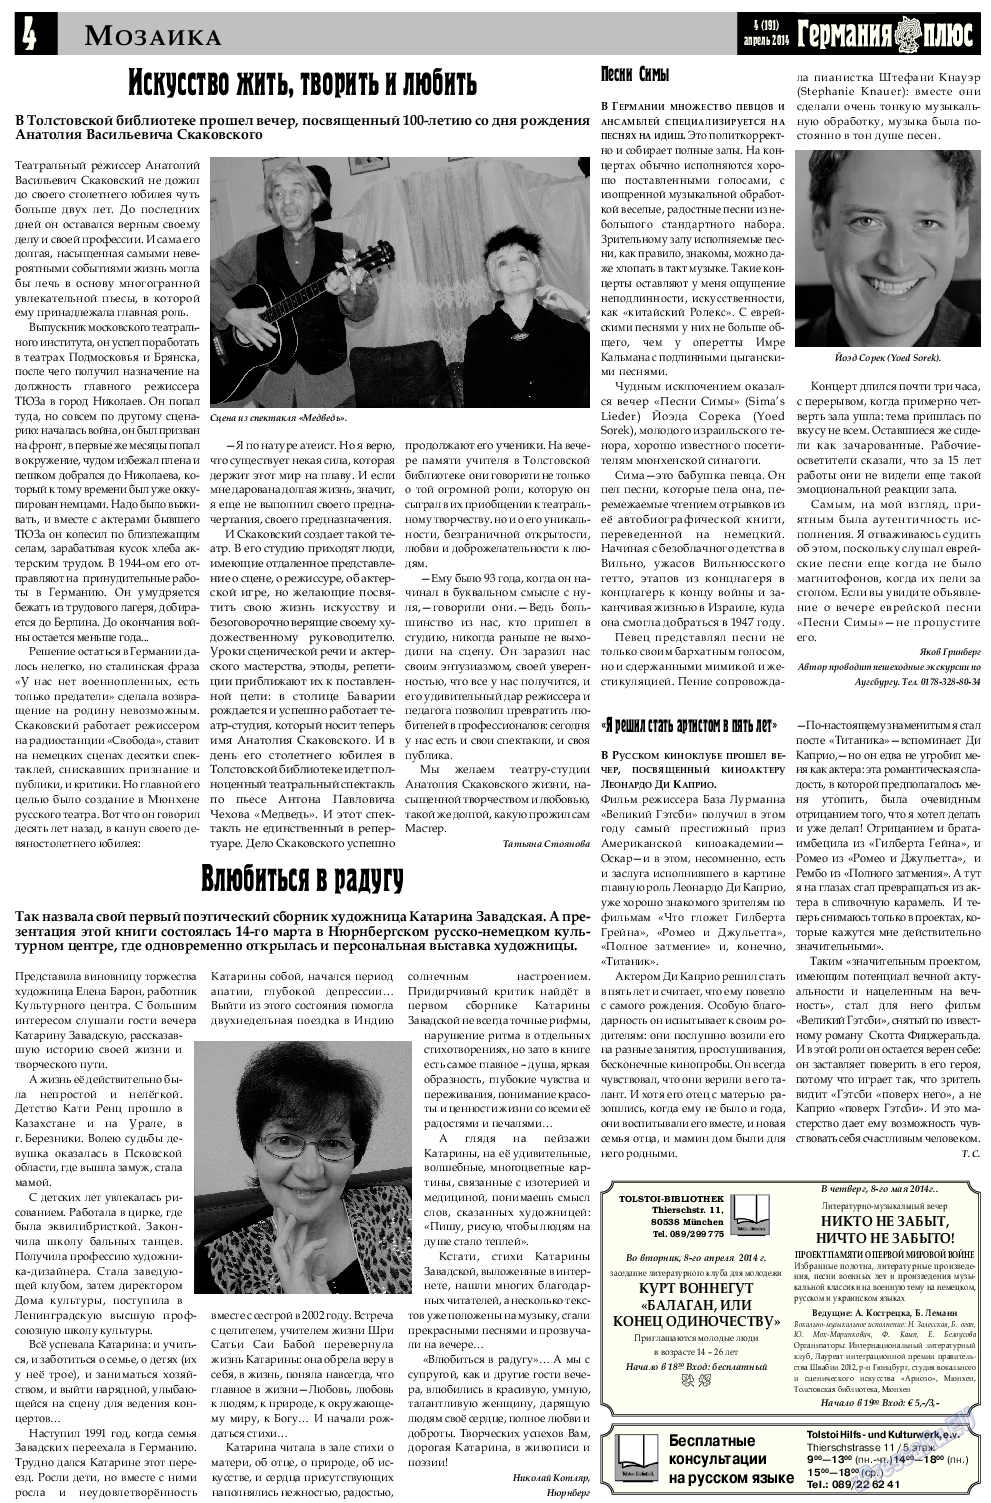 Германия плюс, газета. 2014 №4 стр.4